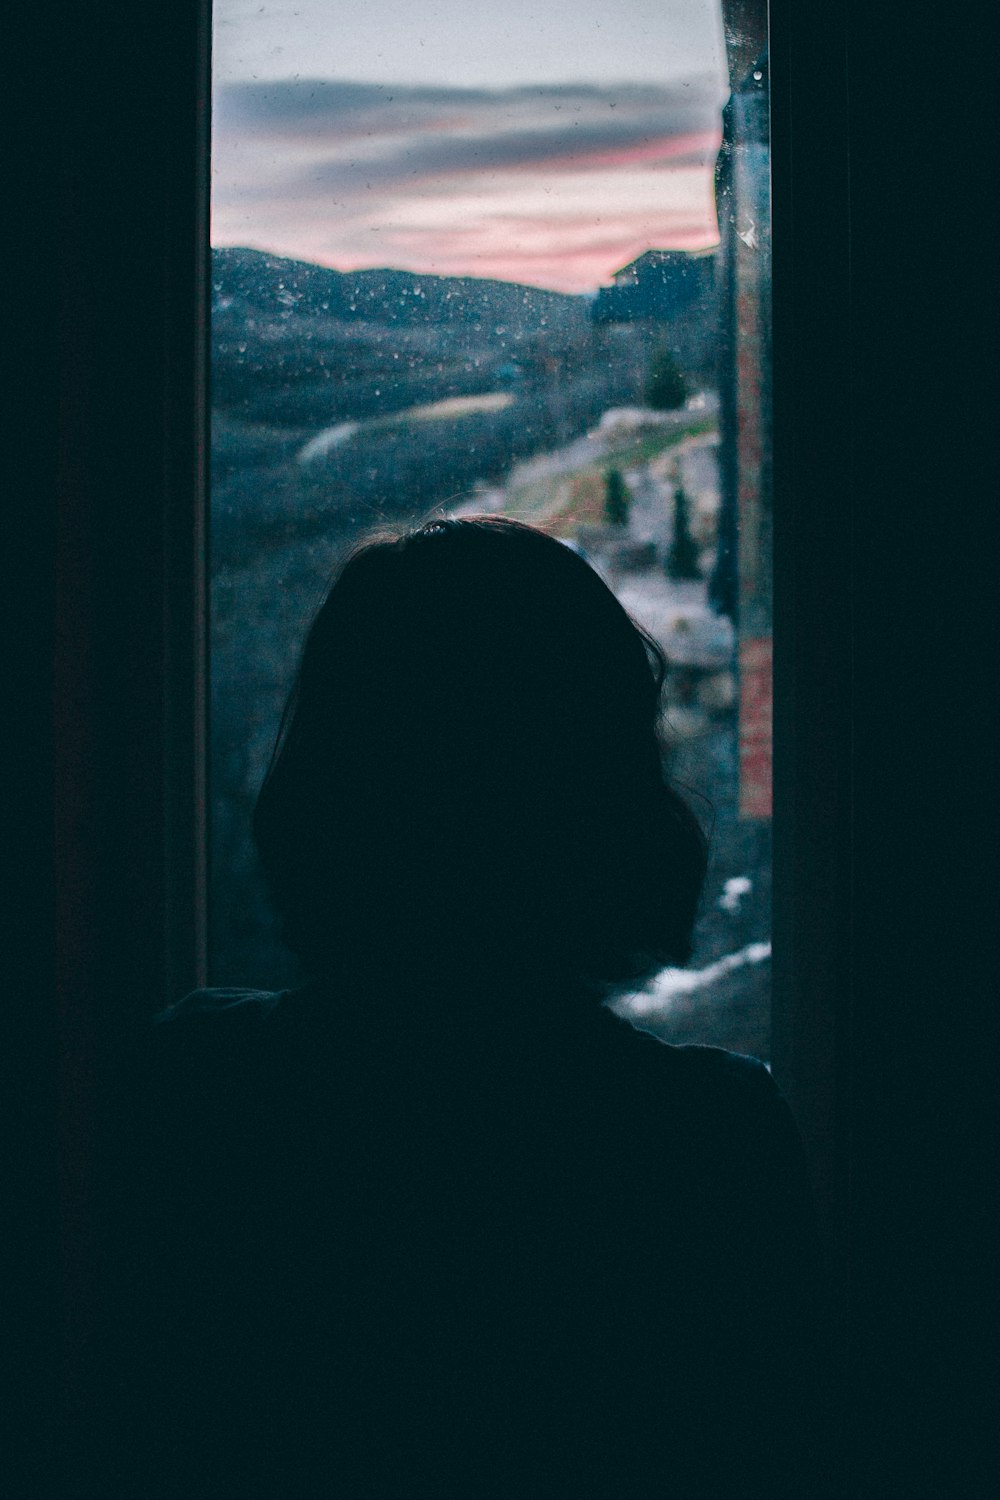 women's silhouette facing outside window